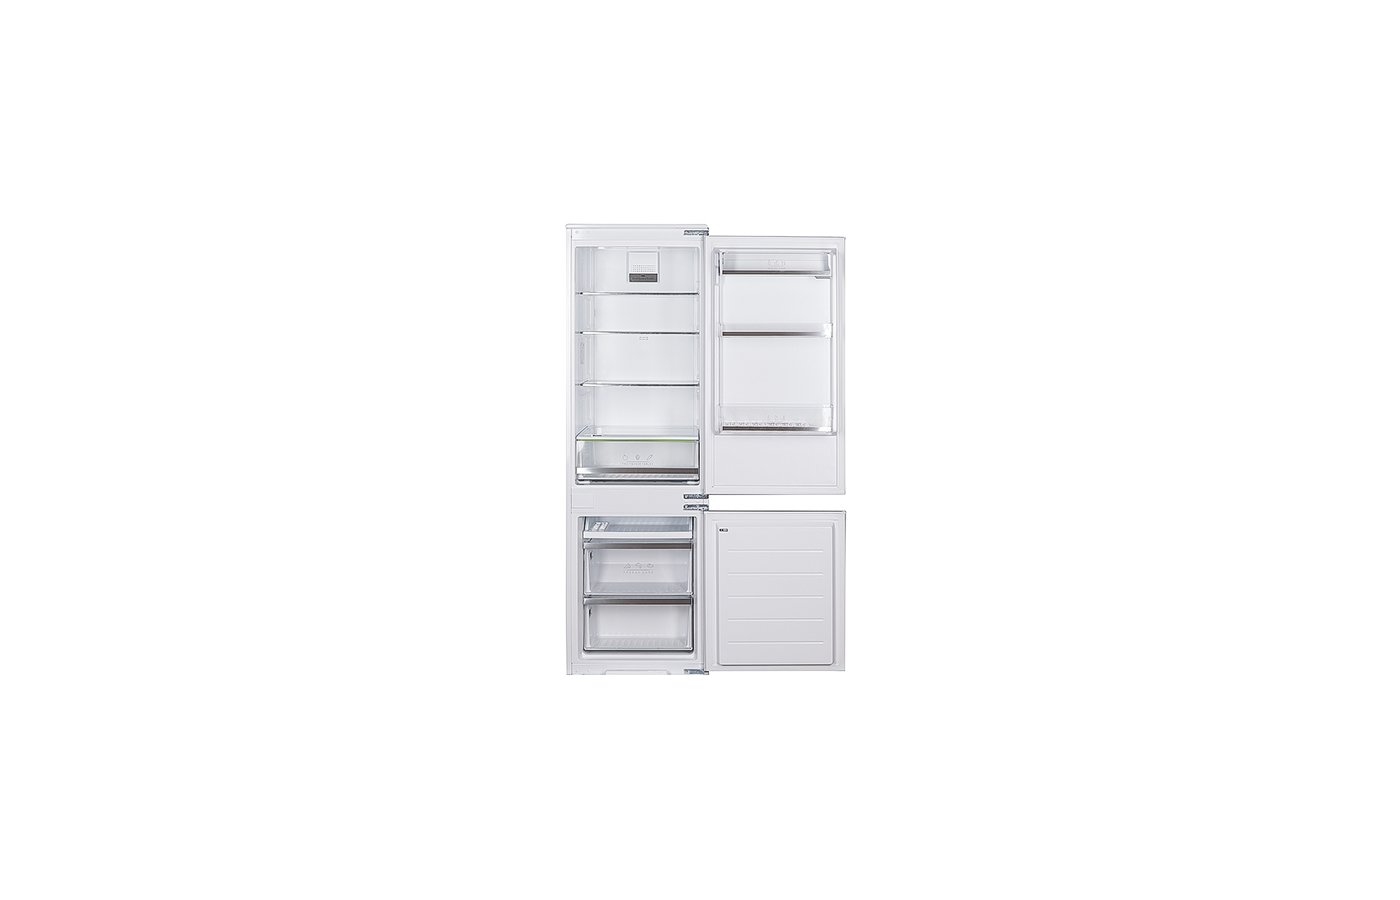 Холодильник bir 2705 nf. Холодильник Leran bir 2705 NF. Встраиваемый холодильник Leran bir 2705 NF. Встраиваемый холодильник Leran bir 2705 NF, белый. Встраиваемый холодильник Leran bir 2705 NF схема встраивания.